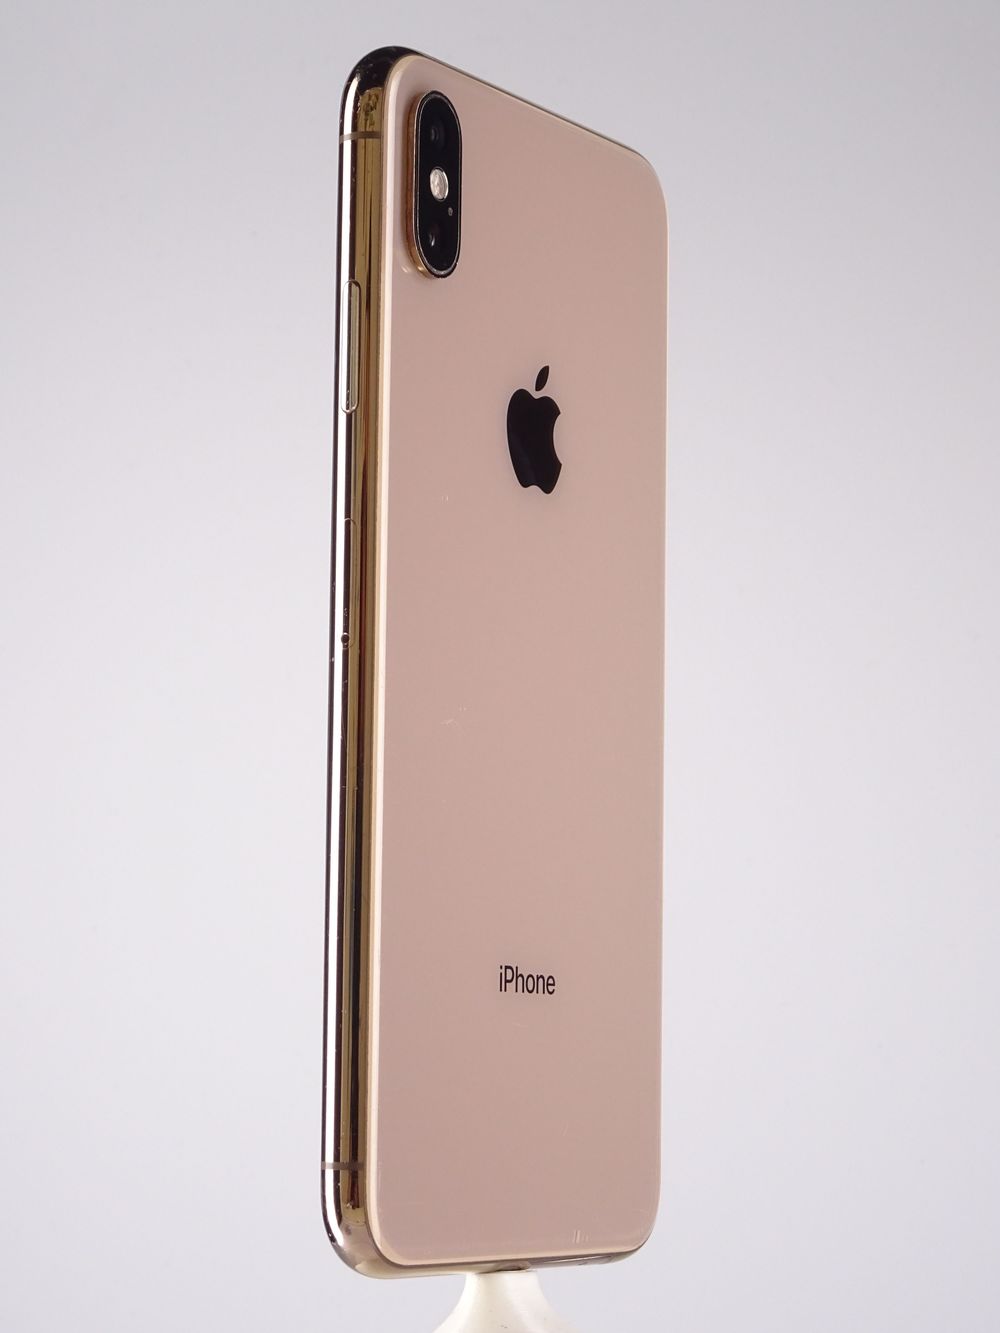 Telefon mobil Apple iPhone XS Max, Gold, 512 GB,  Foarte Bun